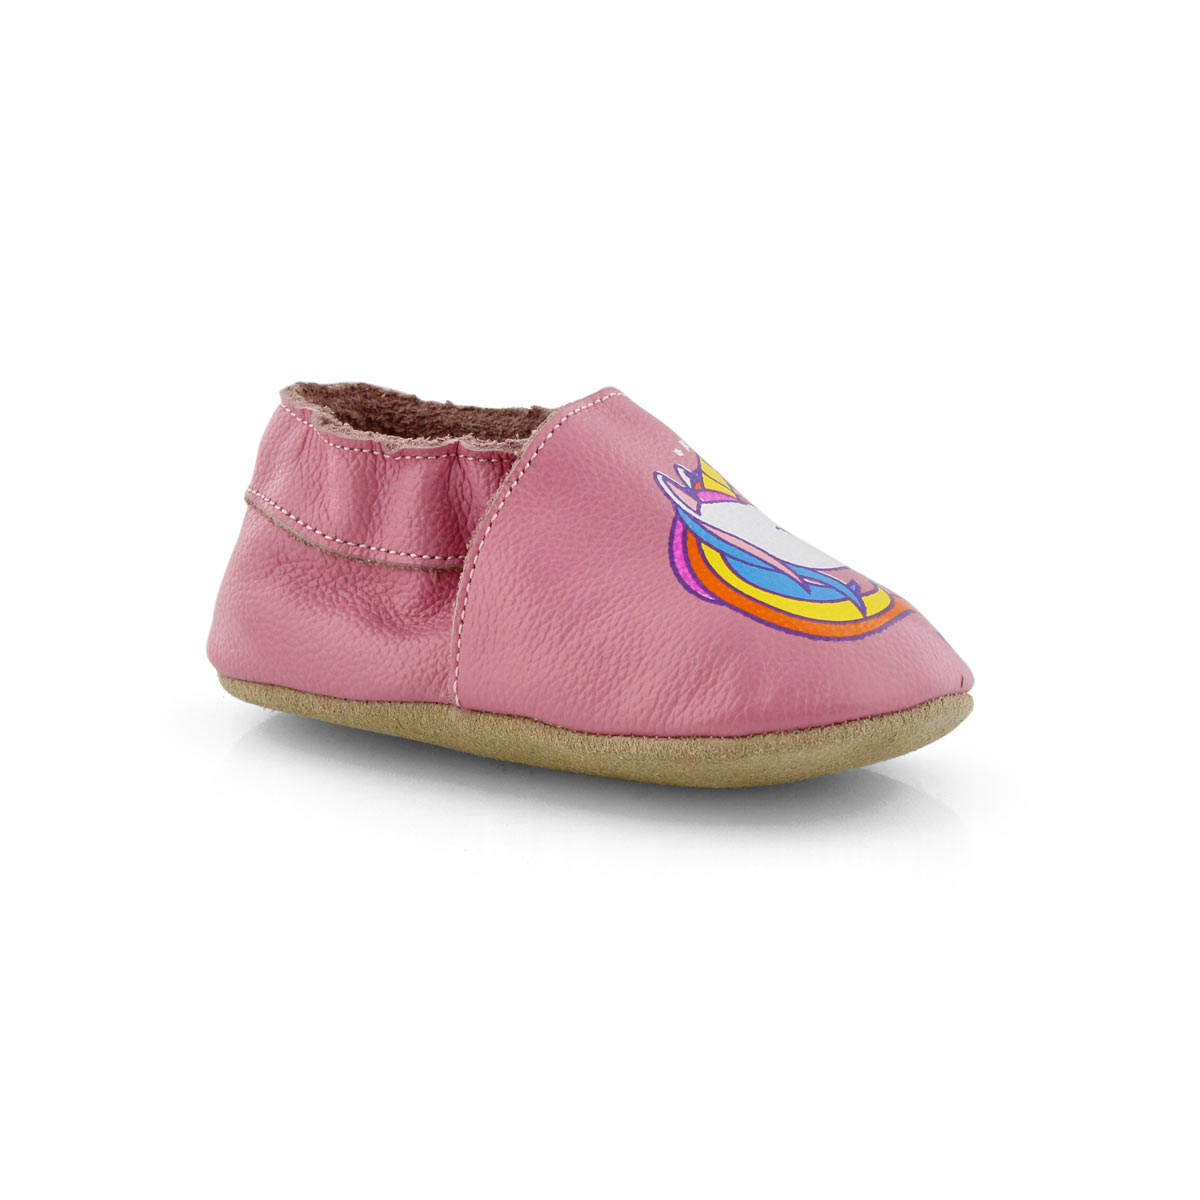 SoftMoc Infants' UNICORN pink slipper 